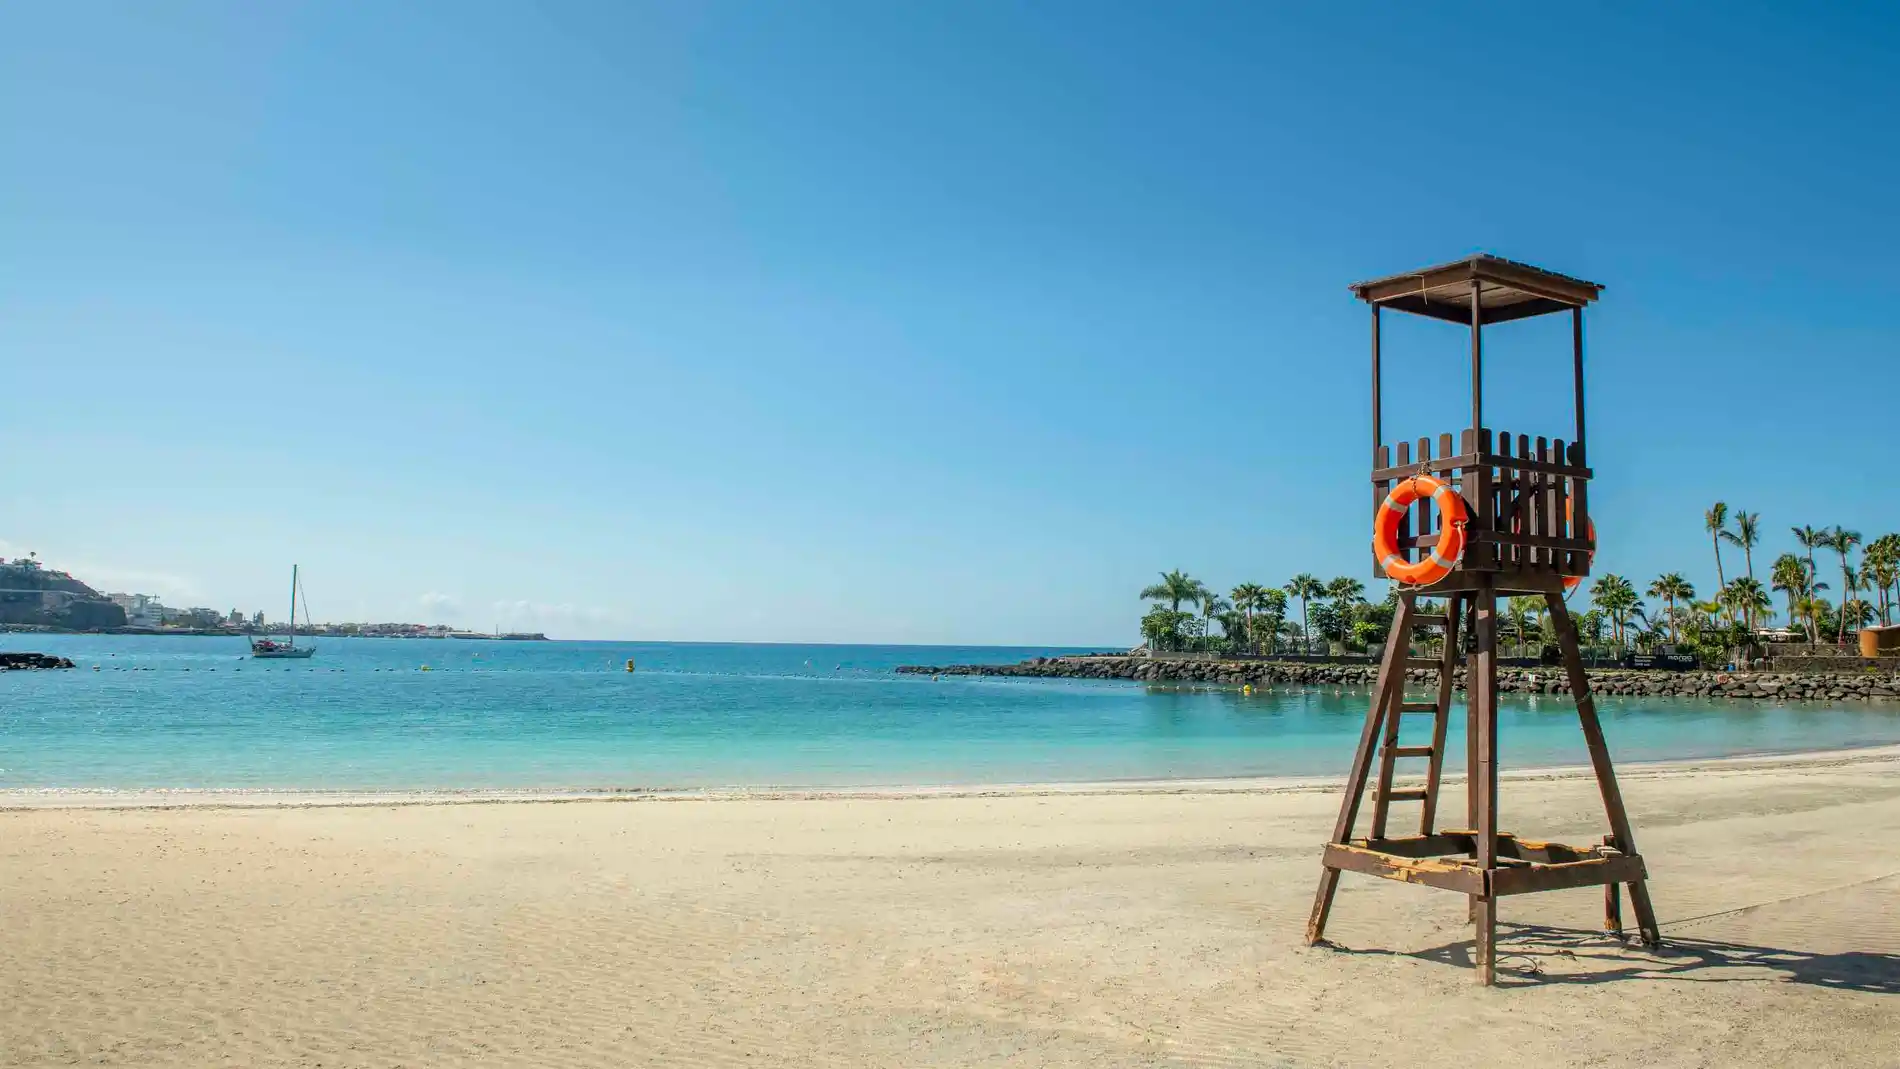 La escapada perfecta es Gran Canaria, el lugar ideal para disfrutar de inmensas playas de arena rubia, pueblos con encanto, gastronomía llena de secretos y una temperatura media anual de 24 grados.